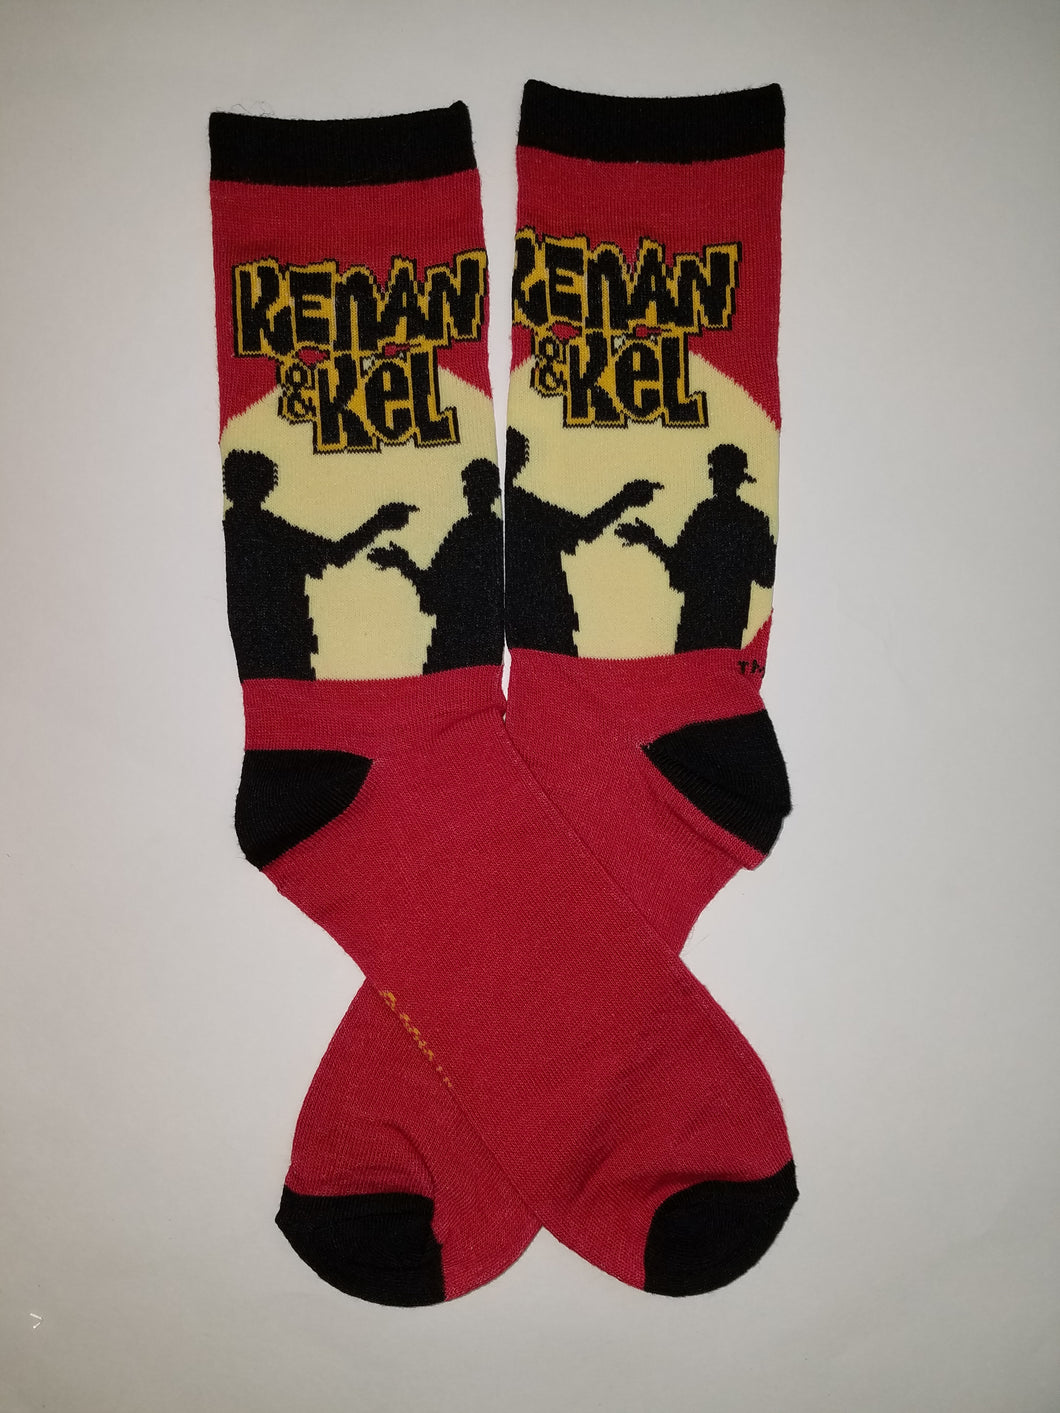 Kenan and Kel Crew Socks